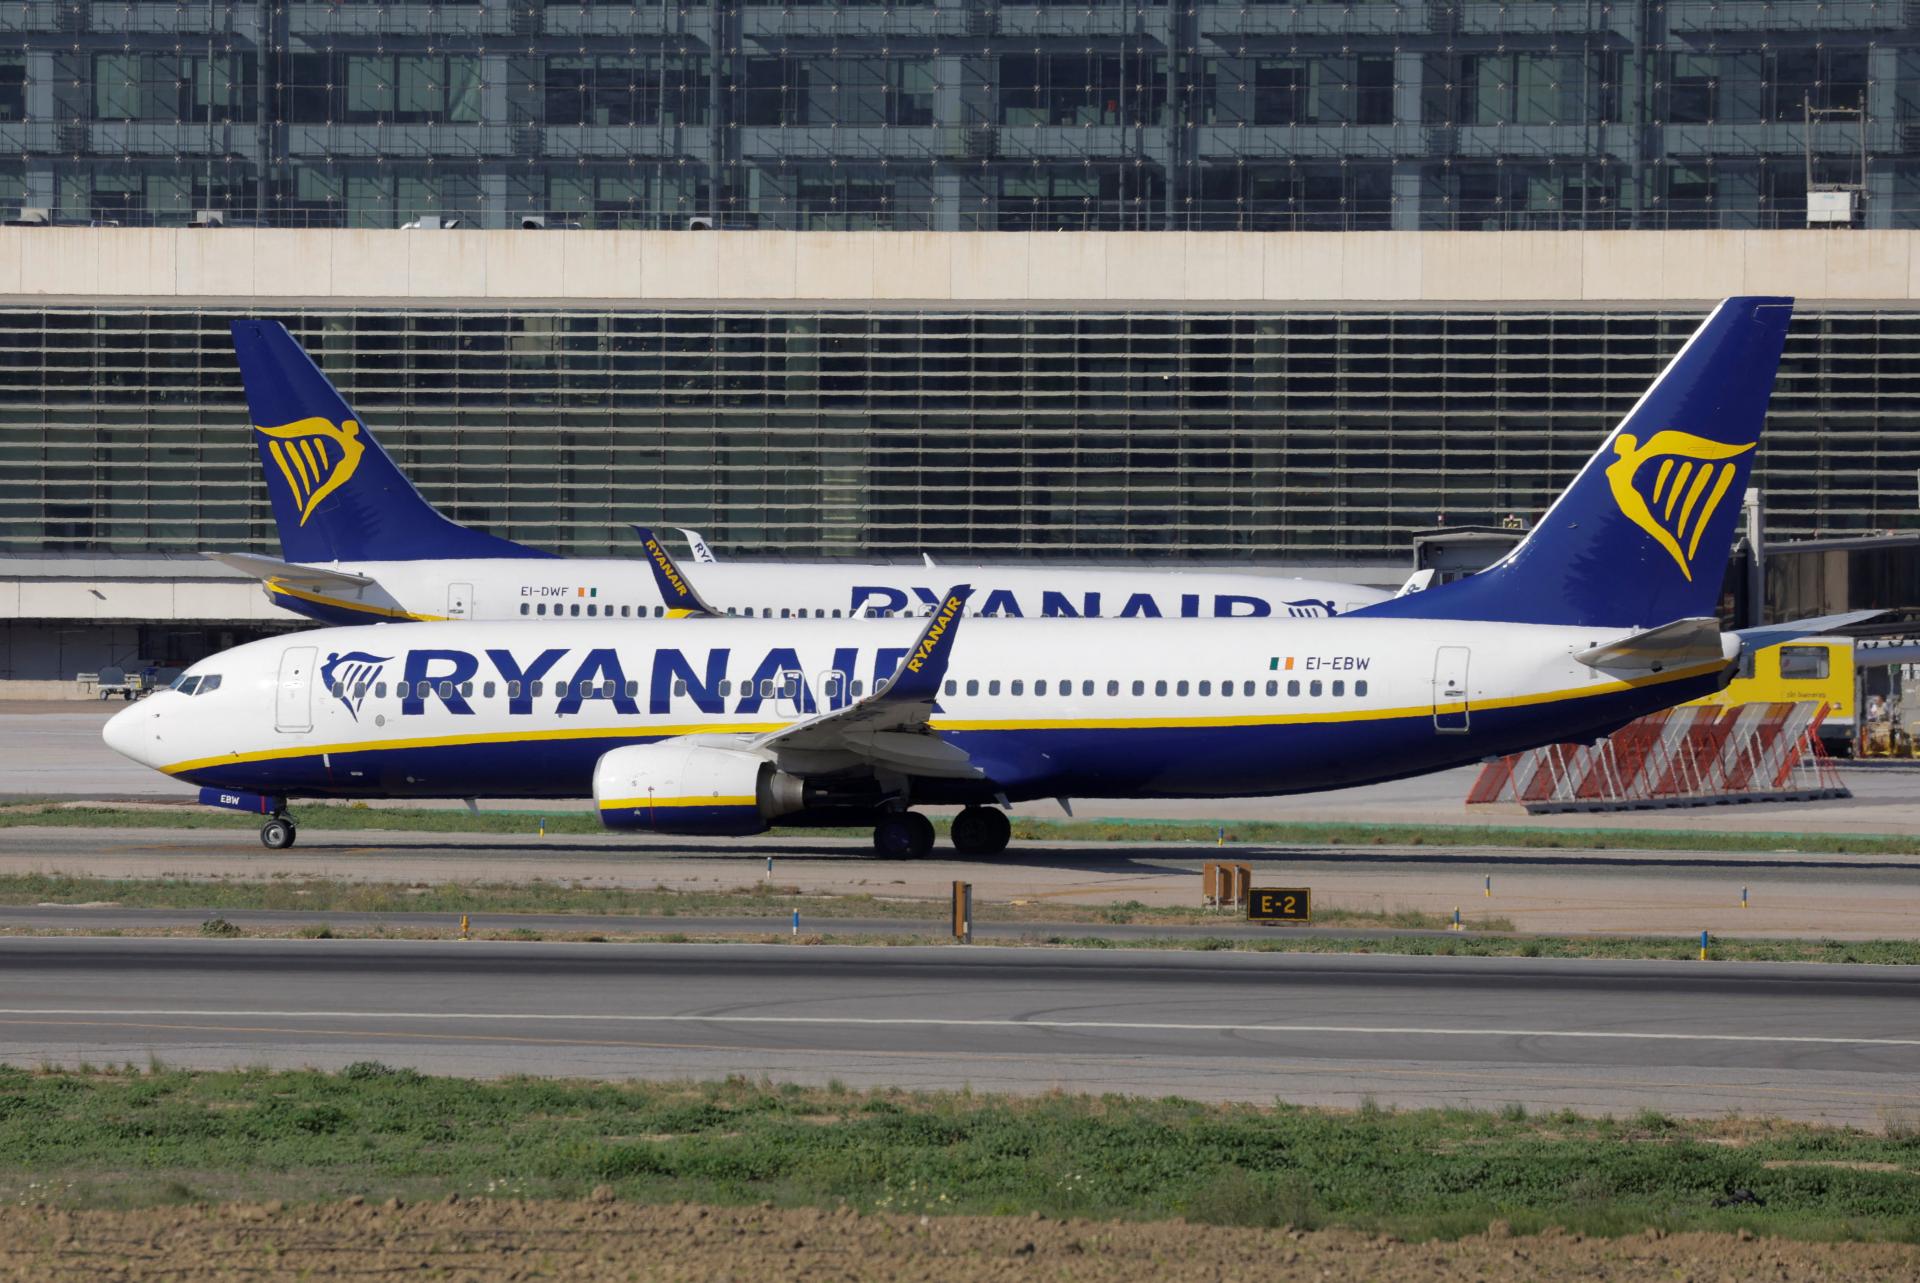 Ryanair hlási skvelé výsledky. Zisk sa zvýšil o viac než tretinu, rekord prekonal aj počet cestujúcich